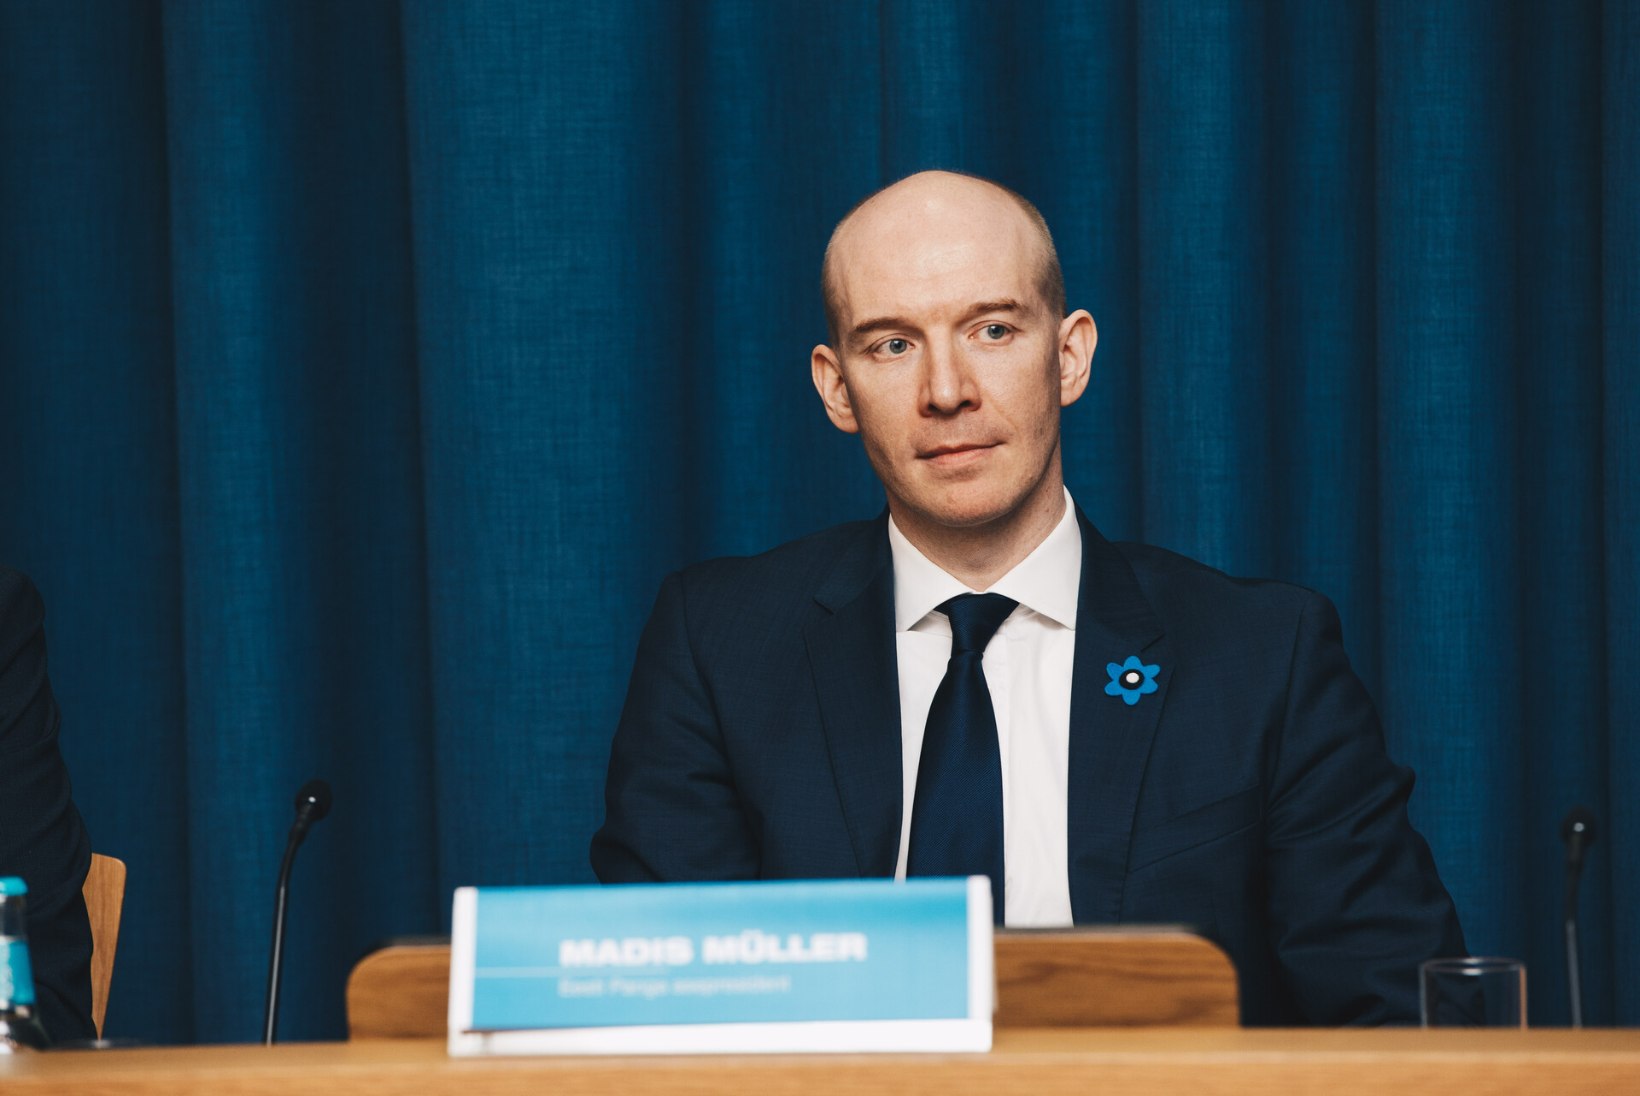 NINANIPS POLIITIKUTELE! Eesti Panga juht: pole näha, et valitsusel oleks plaan tulud ja kulud tasakaalu viia